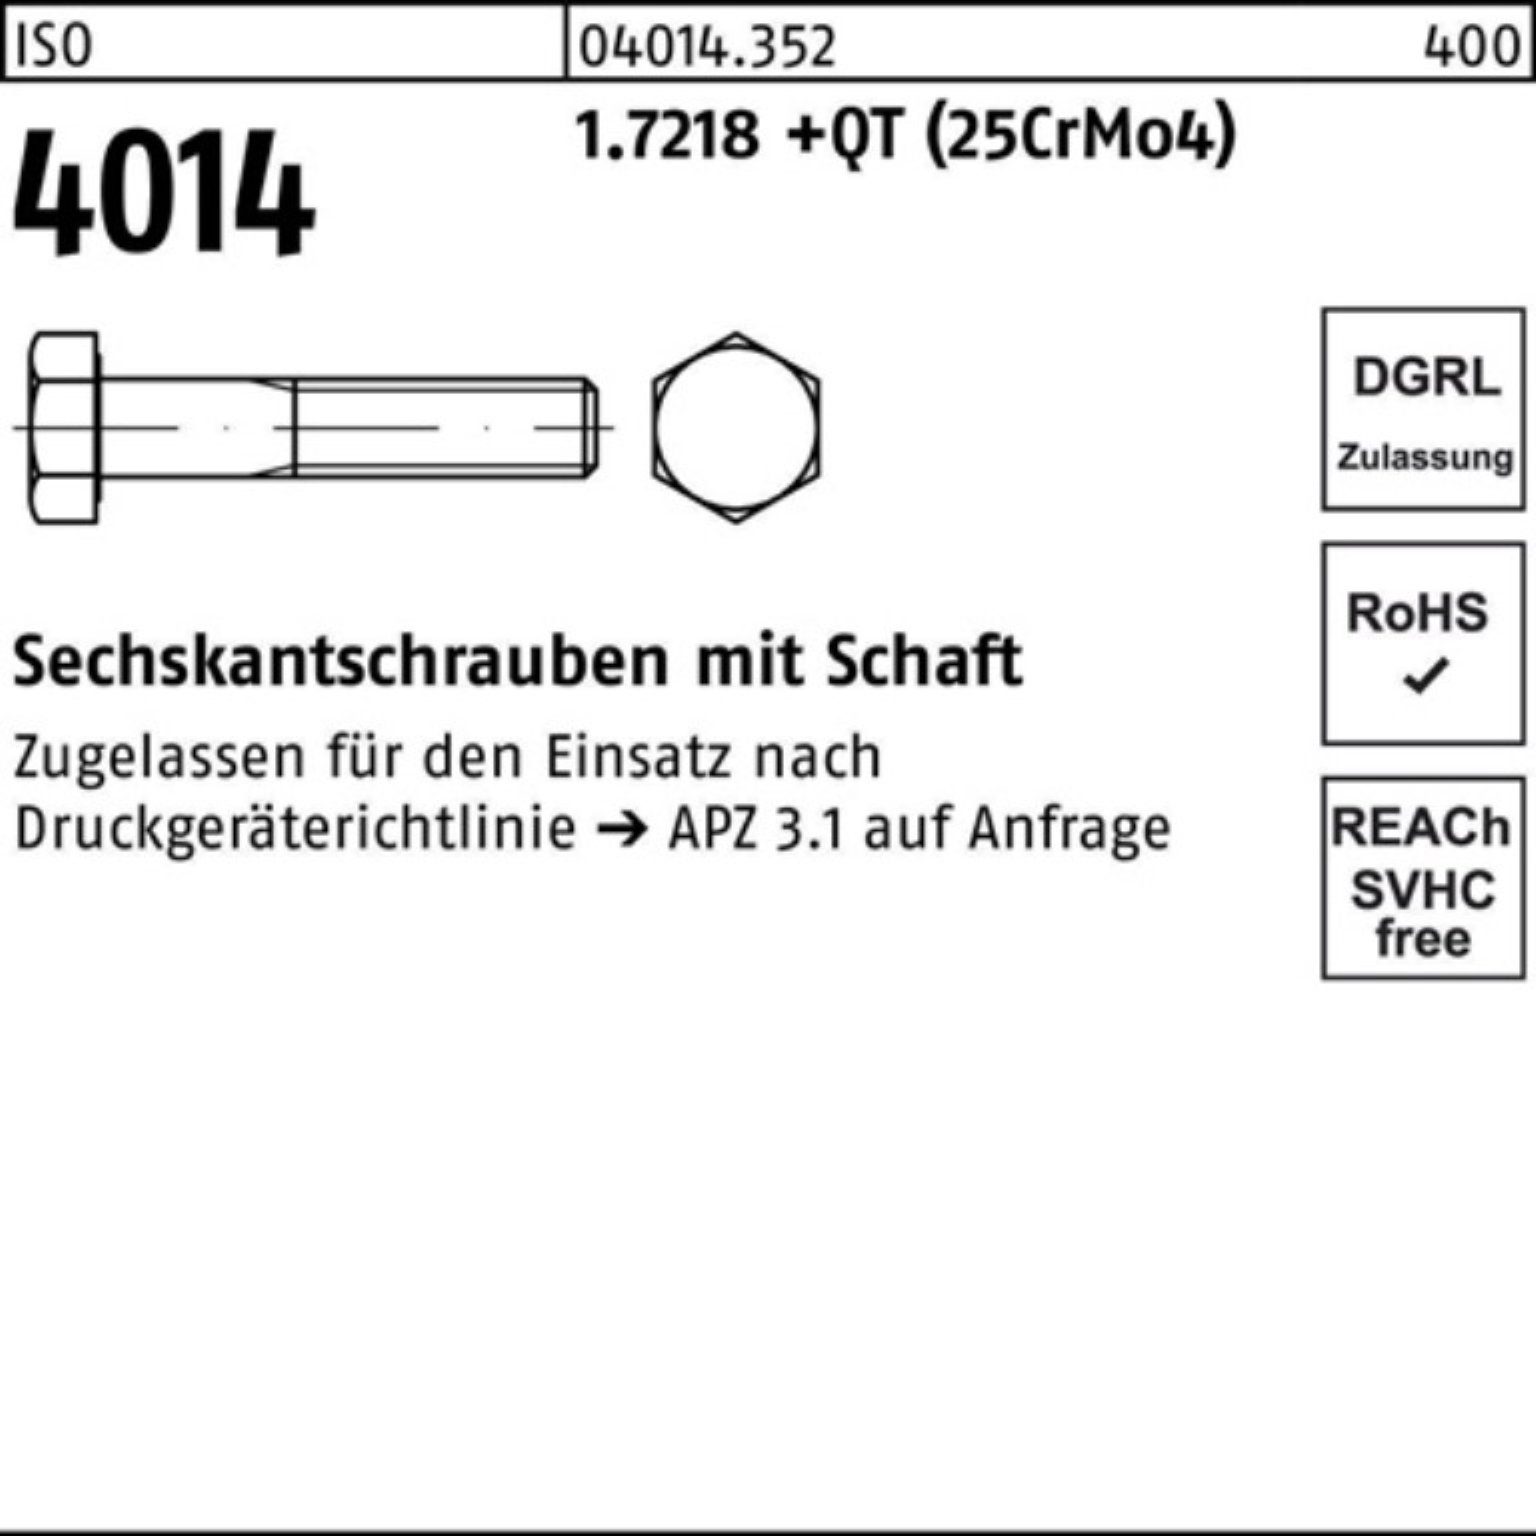 Bufab Sechskantschraube +QT 100er Schaft Pack 1.7218 4014 M24x 140 ISO (25Cr Sechskantschraube